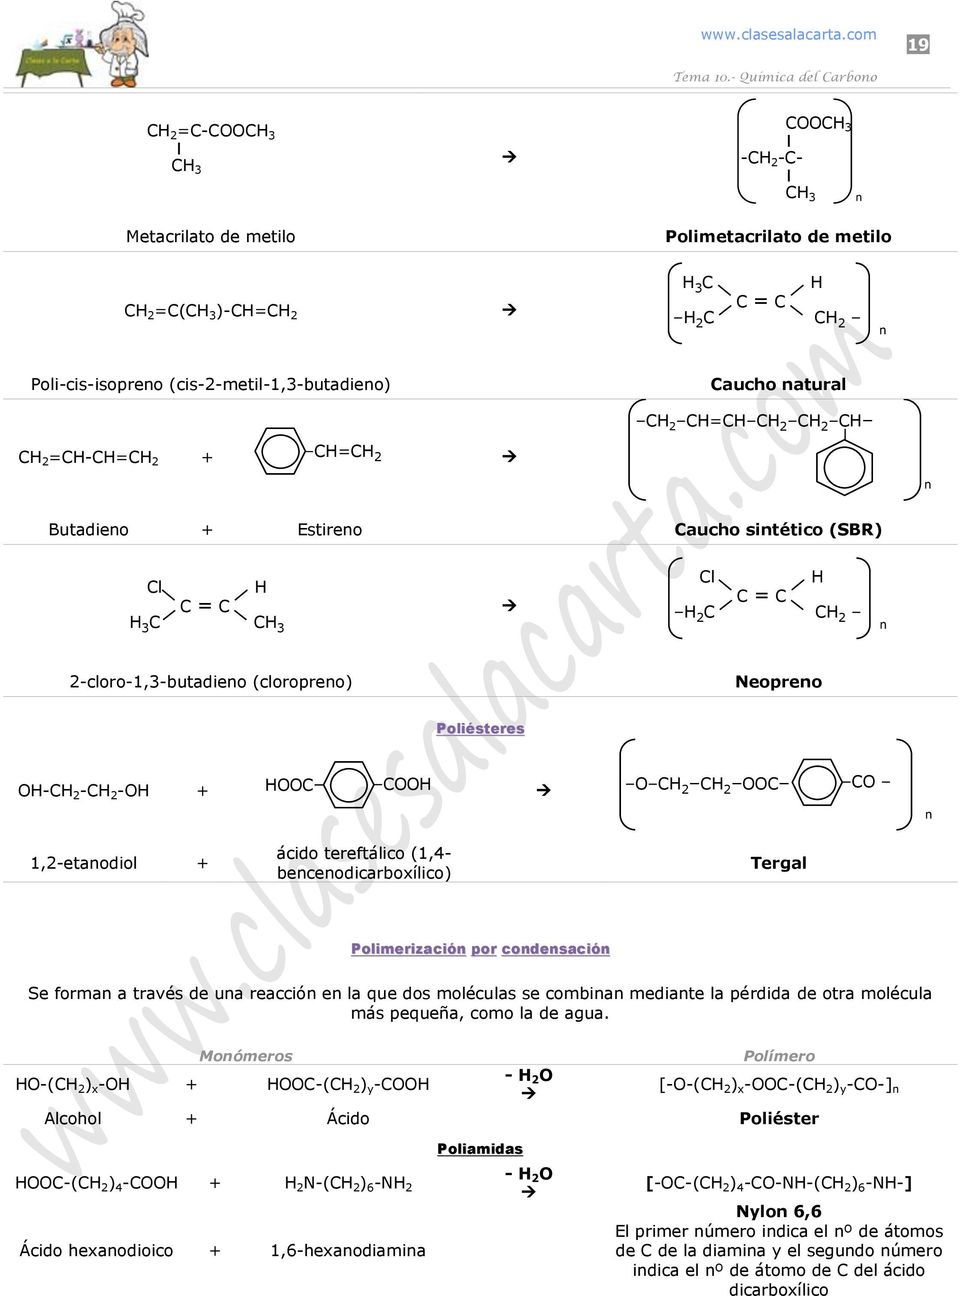 Butadieno + Estireno Caucho sintético (SBR) Cl C C C Cl C C C C n -cloro-,-butadieno (cloropreno) Neopreno Poliésteres -C -C - + C C C C C C n,-etanodiol + cido tereftlico (,- bencenodicarboxílico)